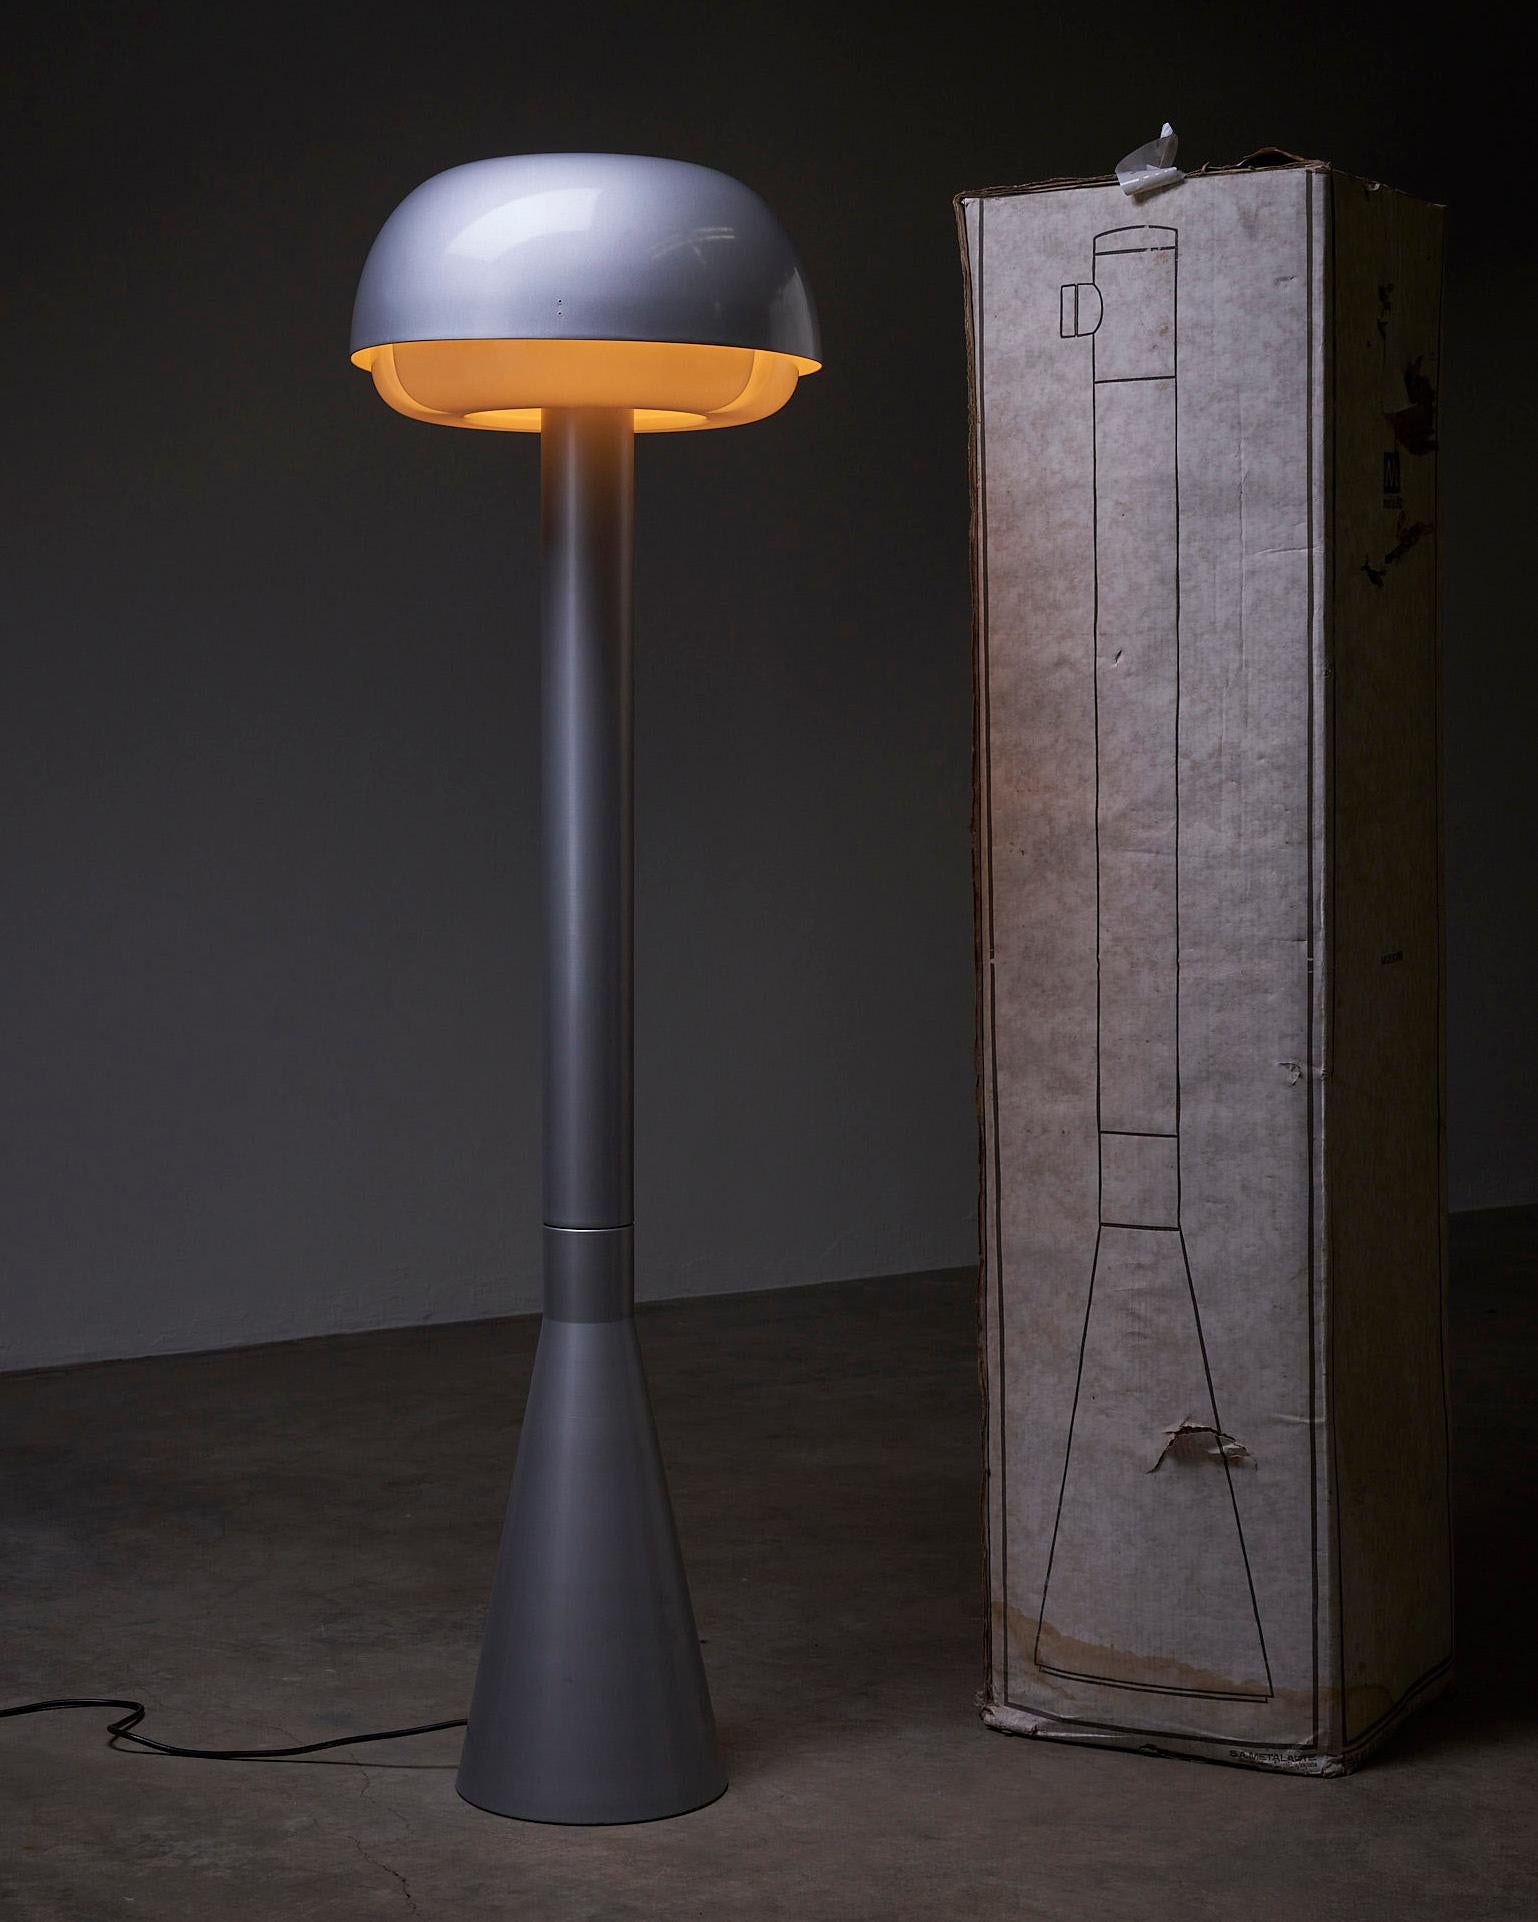 Die tragbare Stehleuchte von Metalarte ist ein bemerkenswertes Beleuchtungsobjekt, das von Enrique Franch entworfen und in Spanien hergestellt wird. Diese Stehlampe besticht durch ihr schlankes und modernes Design mit einer auffälligen grauen